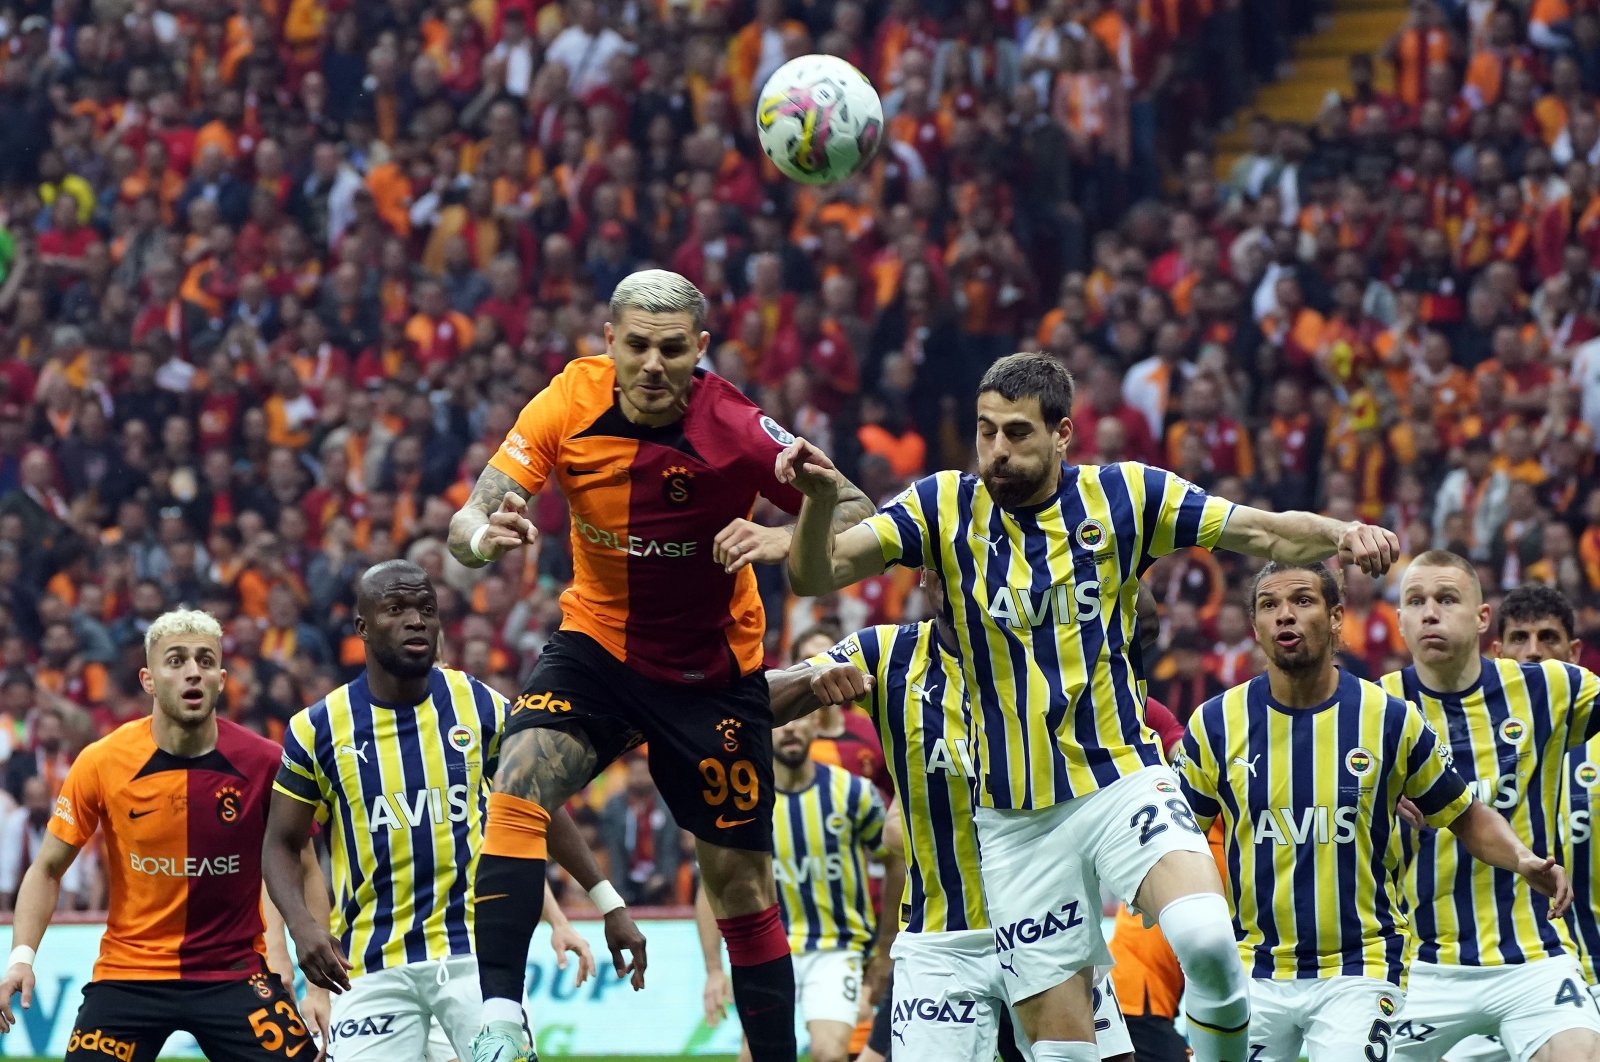 Akhirnya di sini: pencarian Türkiye untuk posisi 10 besar sepak bola Eropa dimulai